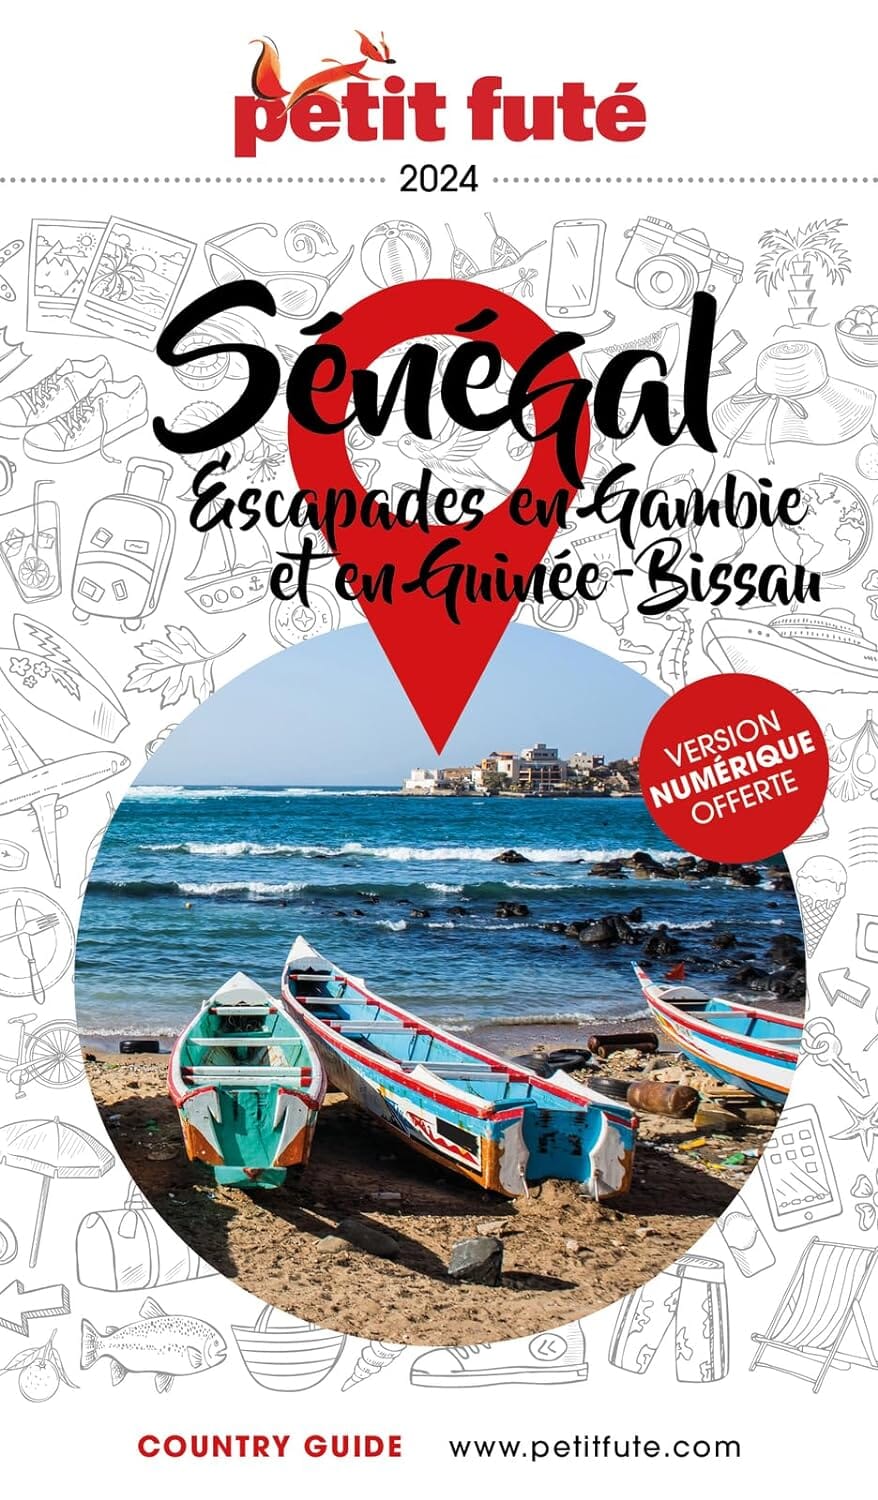 Guide de voyage - Sénégal & escapade en Gambie 2024 | Petit Futé guide de voyage Petit Futé 